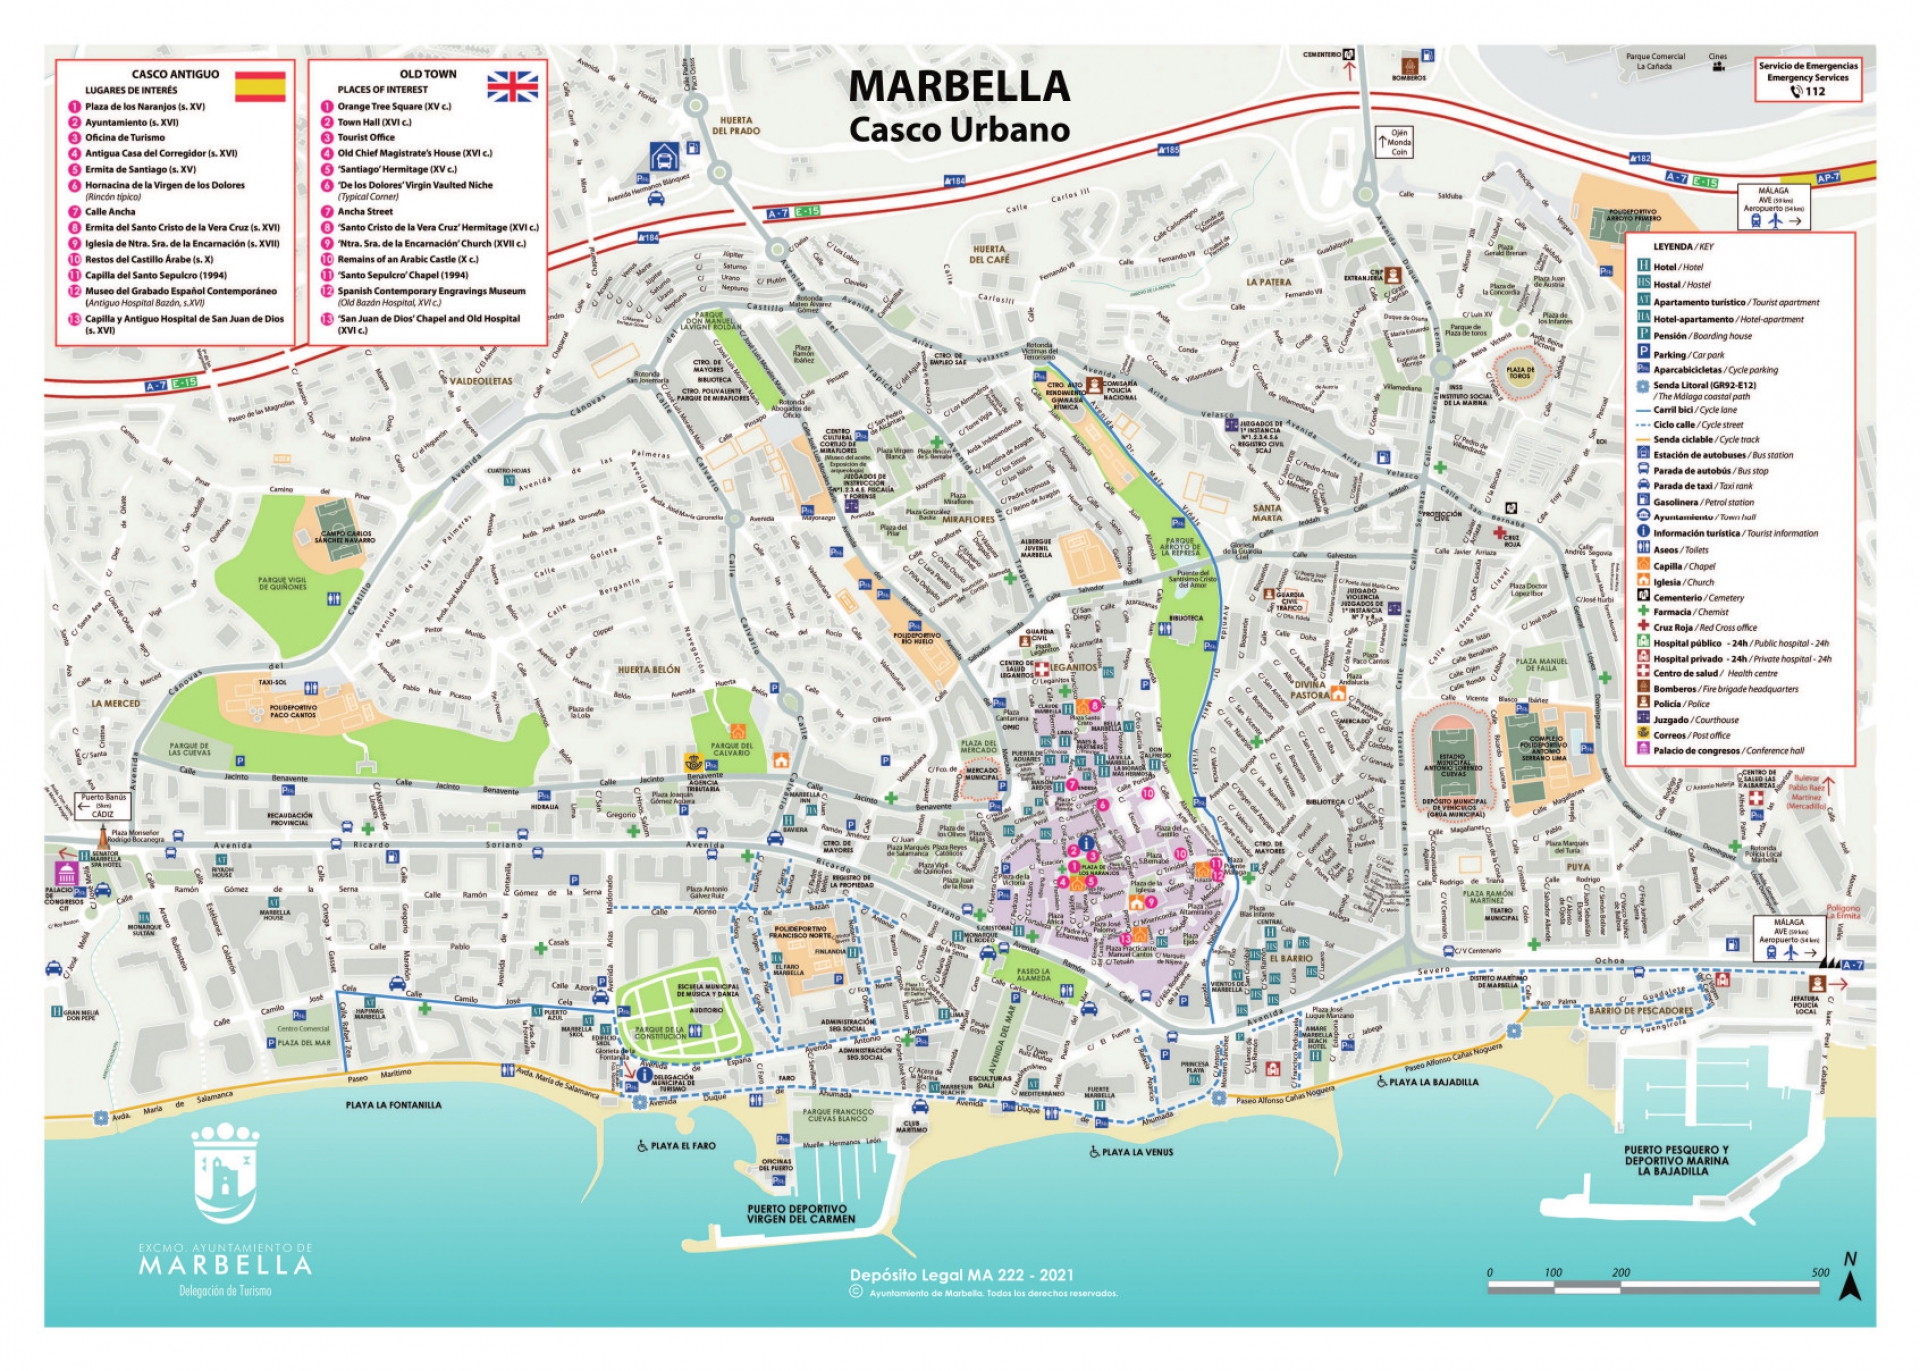 Marbella pueblo